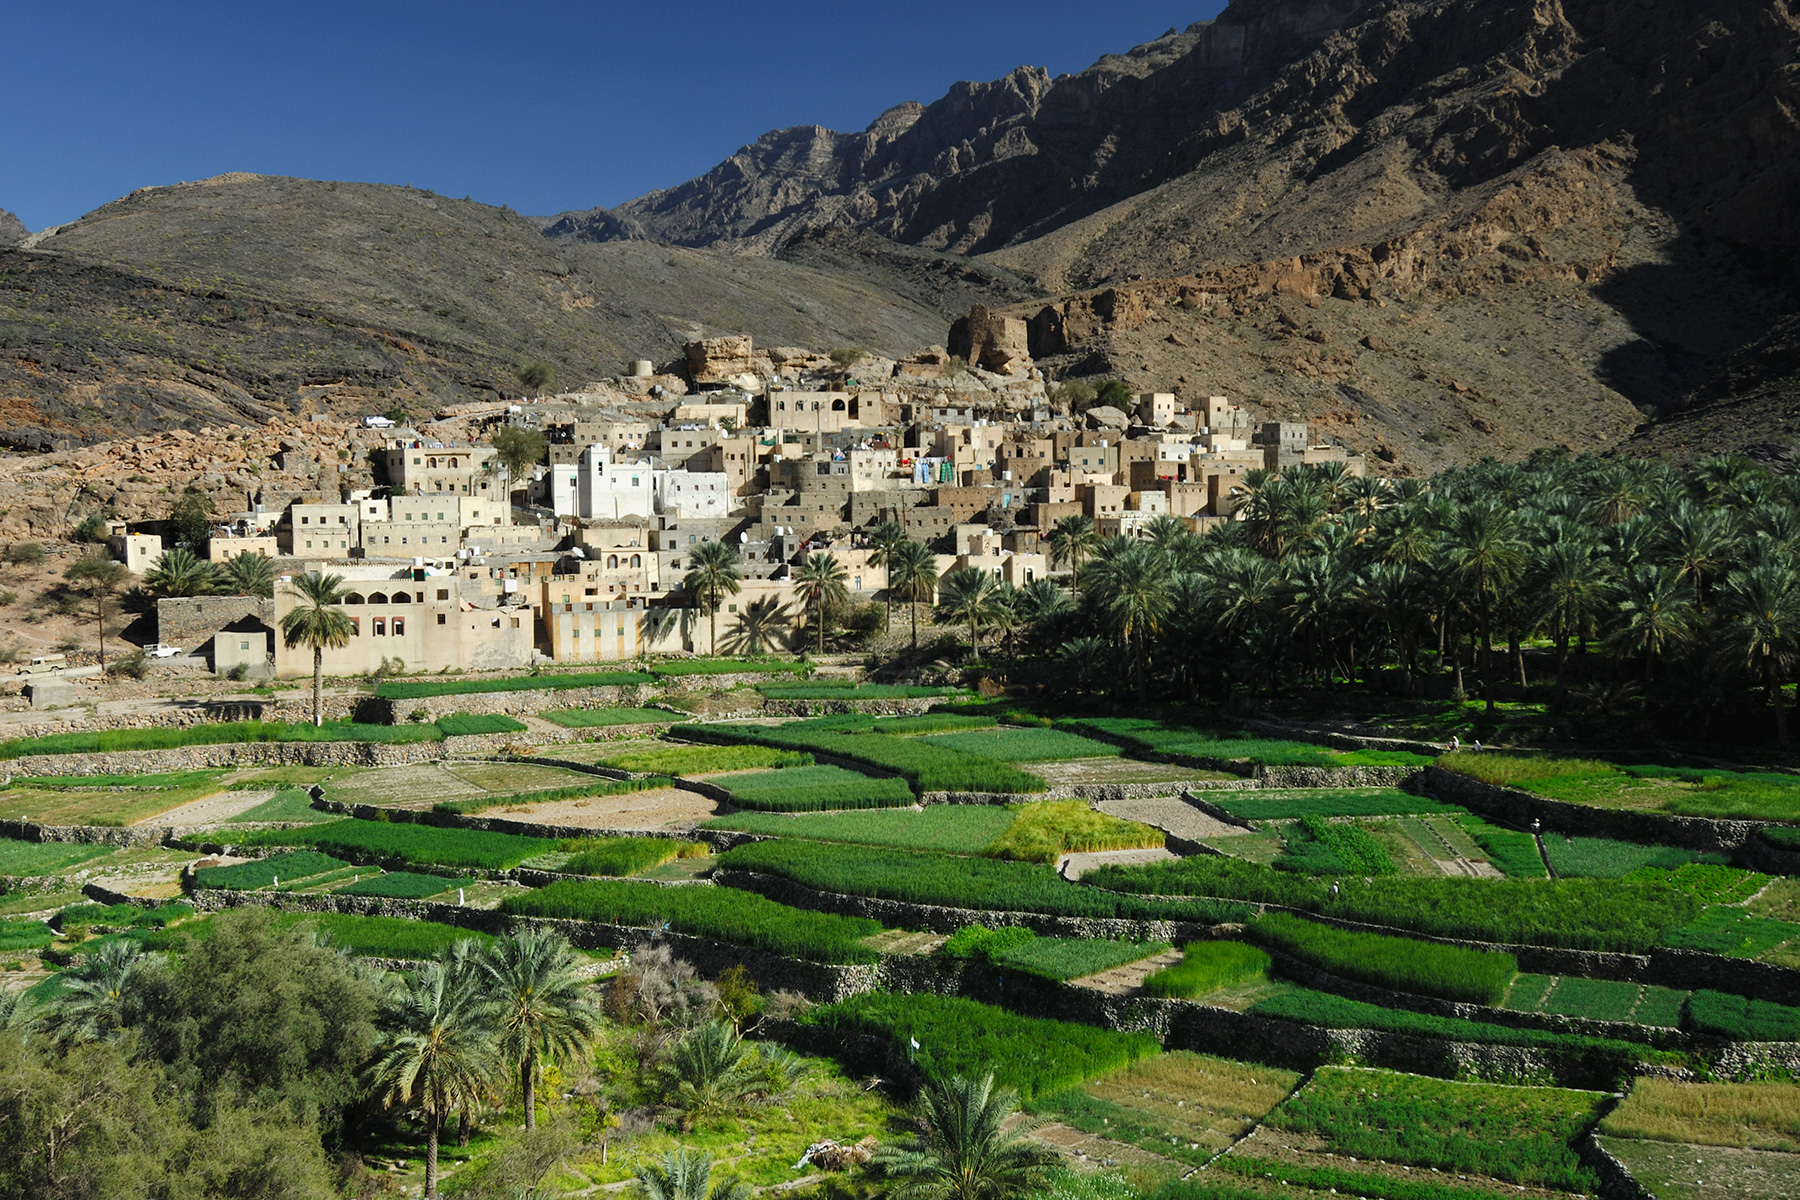 Sultanat d'Oman - Village de Balad Sayt avec patchwork de champs cultivés